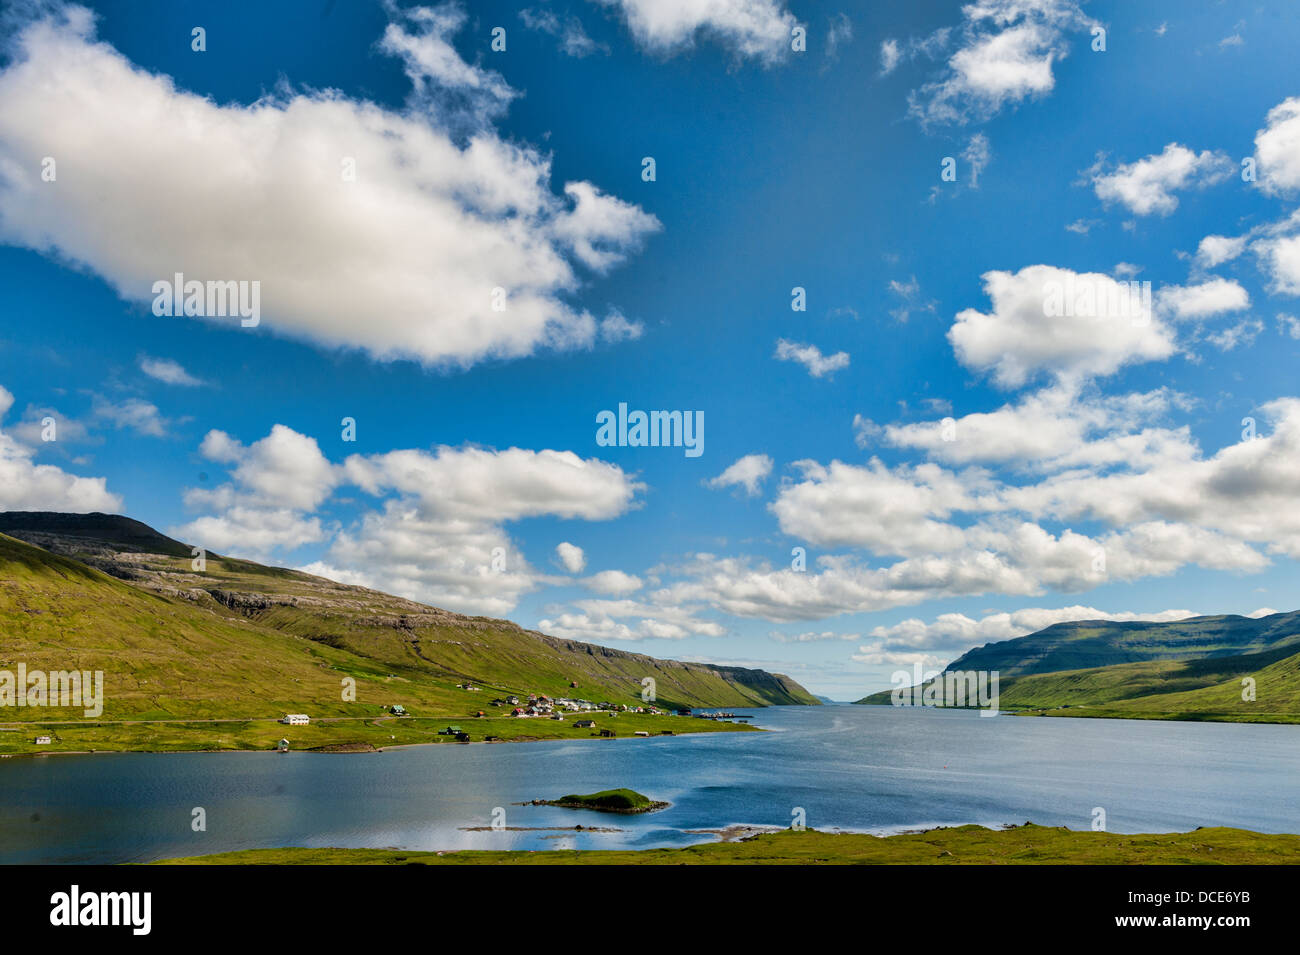 Landscape in the Faroe Islands Stock Photo